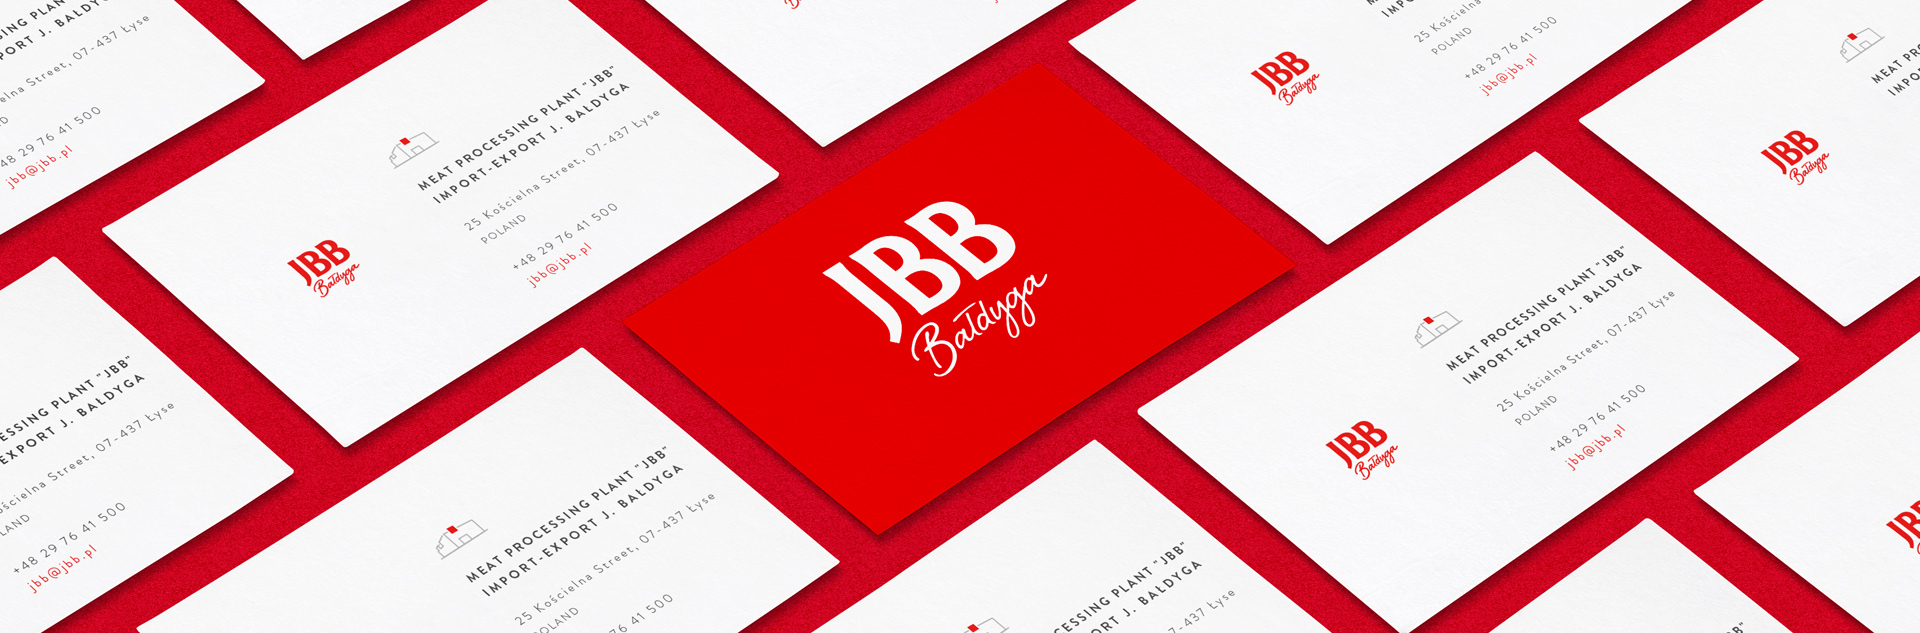 Wizytówki JBB Bałdyga w wykonaniu PND Futura